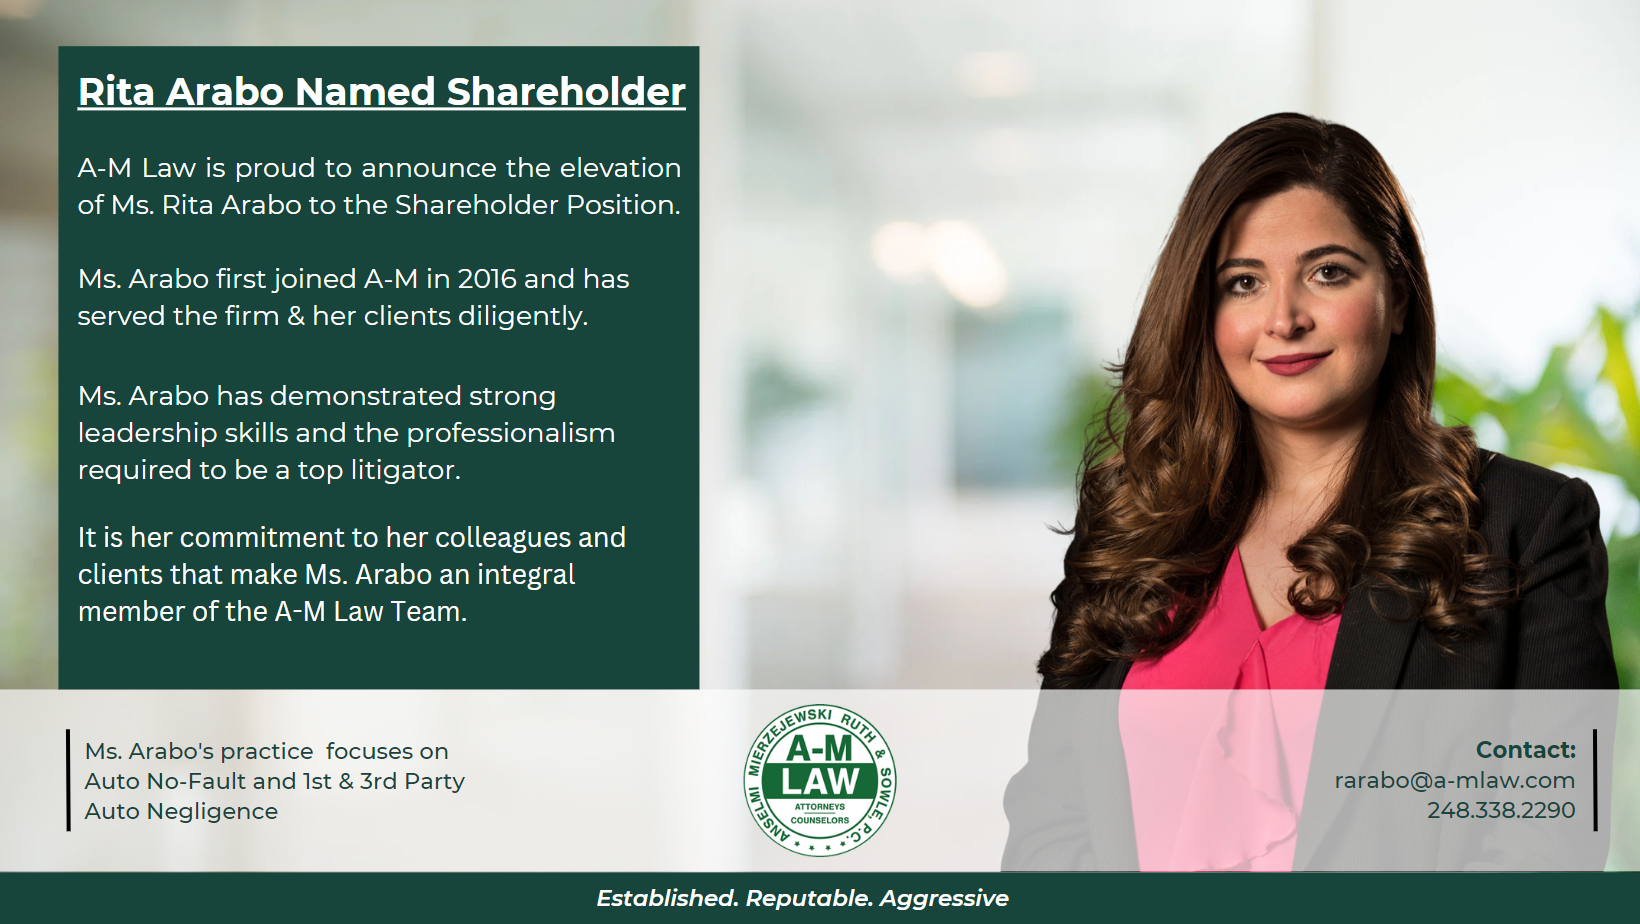 Rita Arabo Named Shareholder